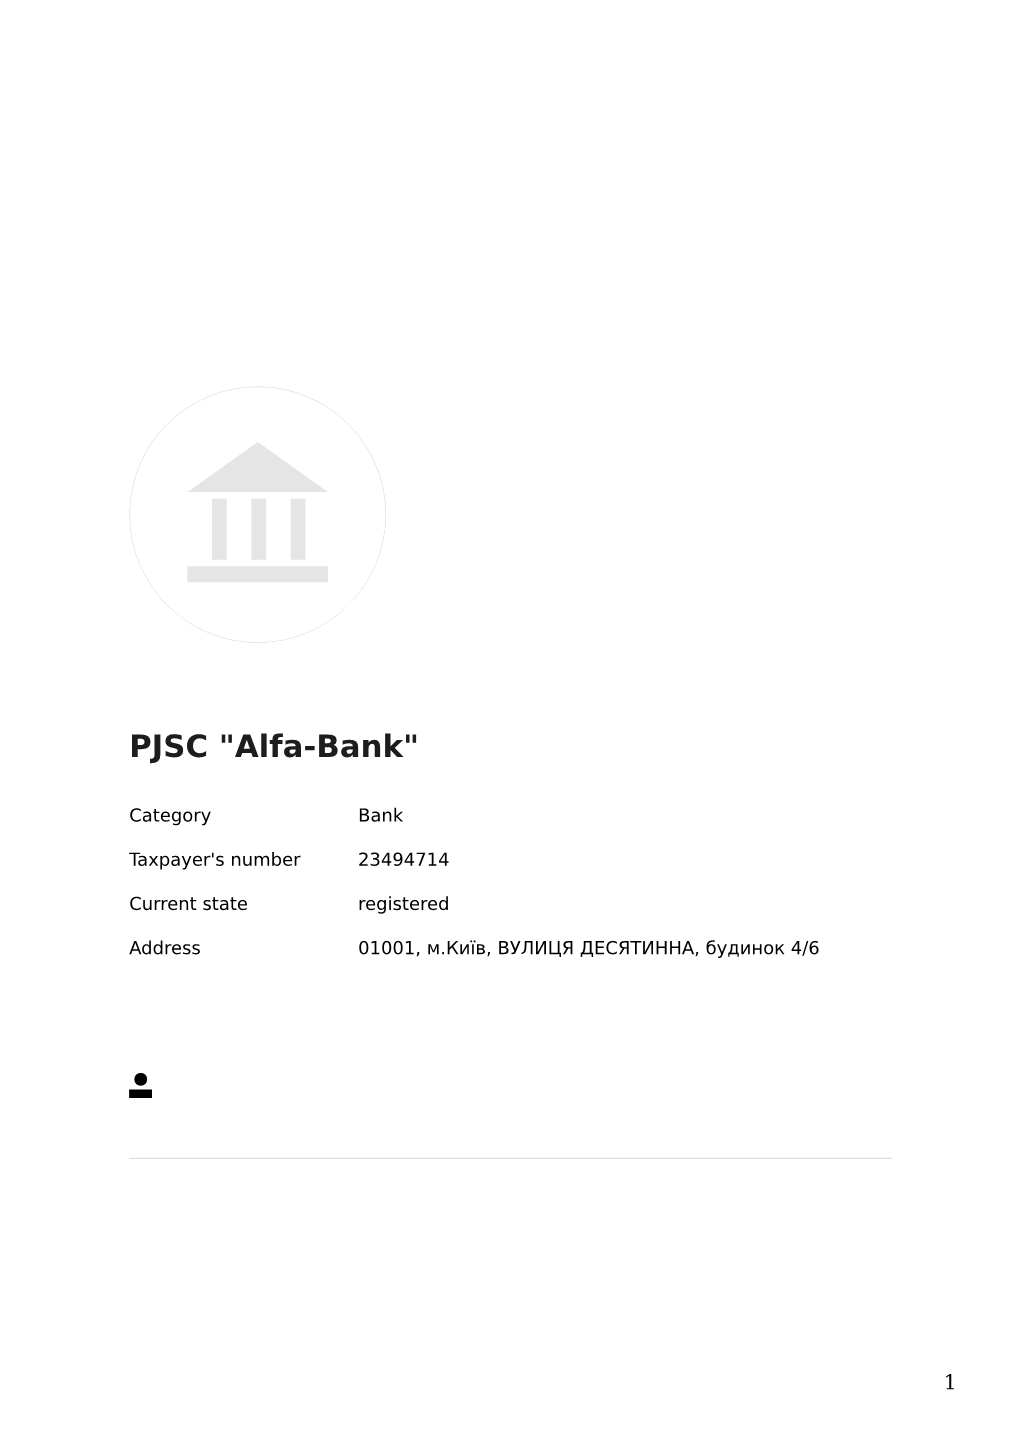 PEP: PJSC "Alfa-Bank" (23494714)